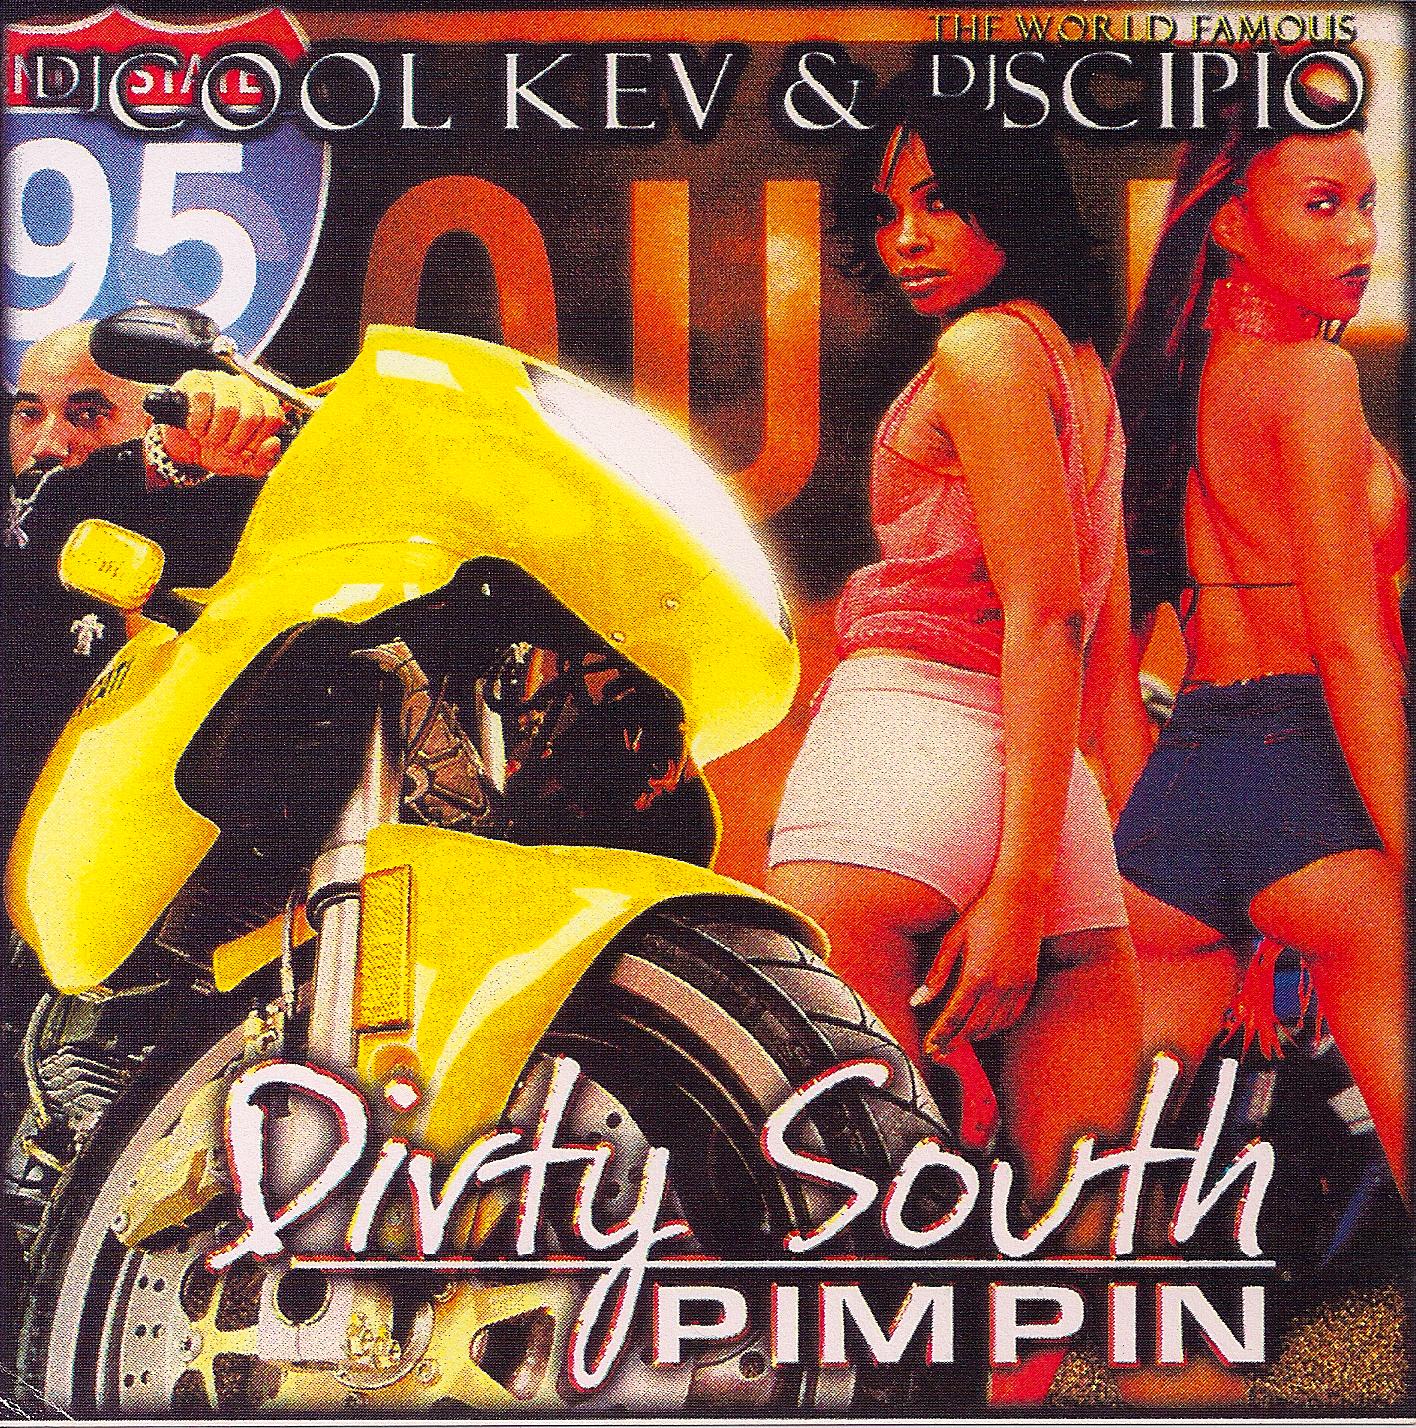 DJ Cool Kev – Dirty South Pimpin, Hip Hop, Dirty South, Mixtape Downloads, Downloads, Rap